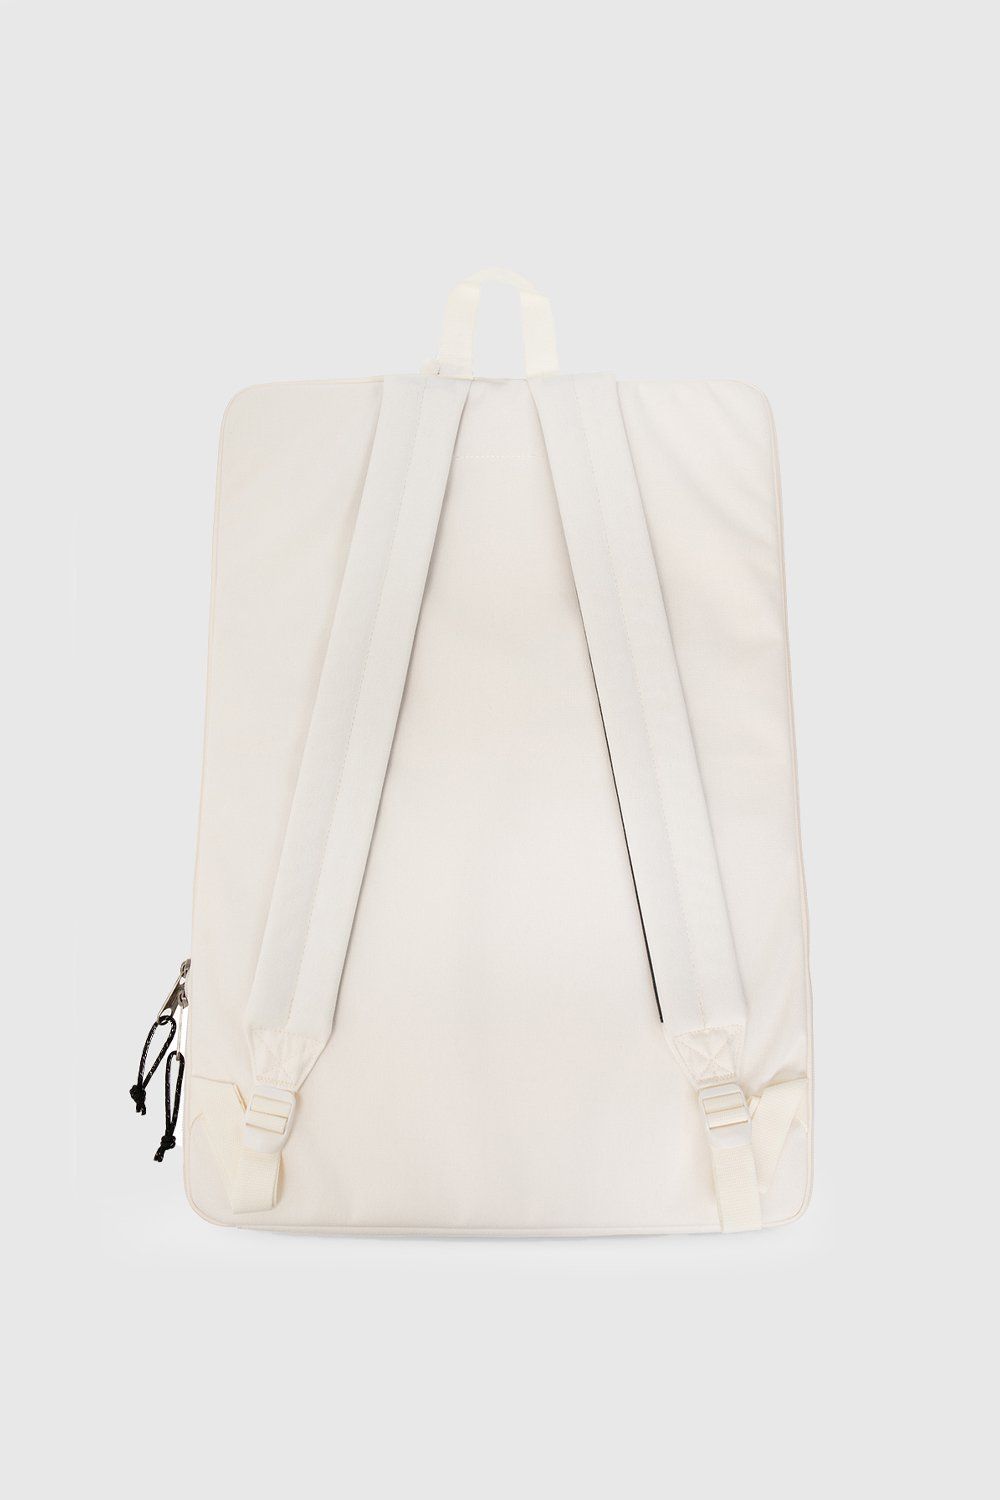 MM6 Maison Margiela x Eastpak – Zaino Backpack Whisper White - Backpacks - White - Image 3